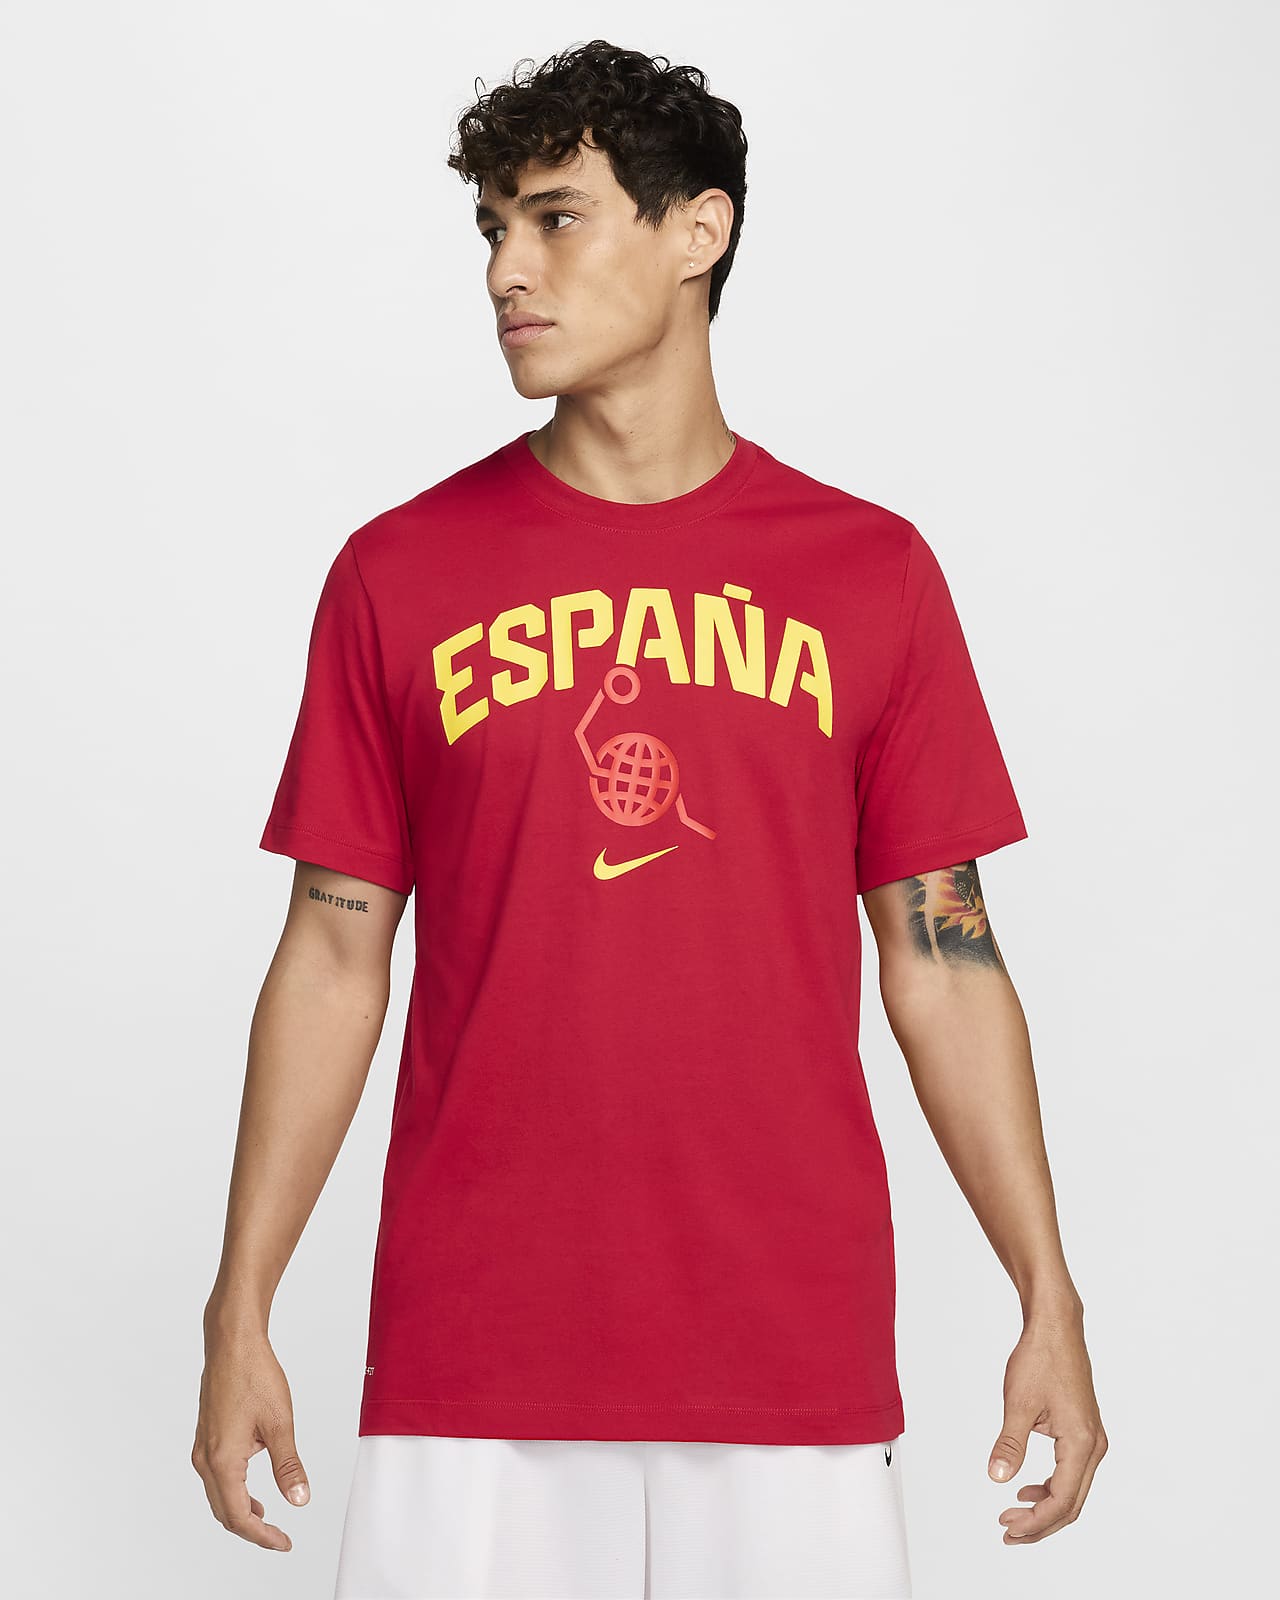 Spain Men's Nike Basketball T-Shirt